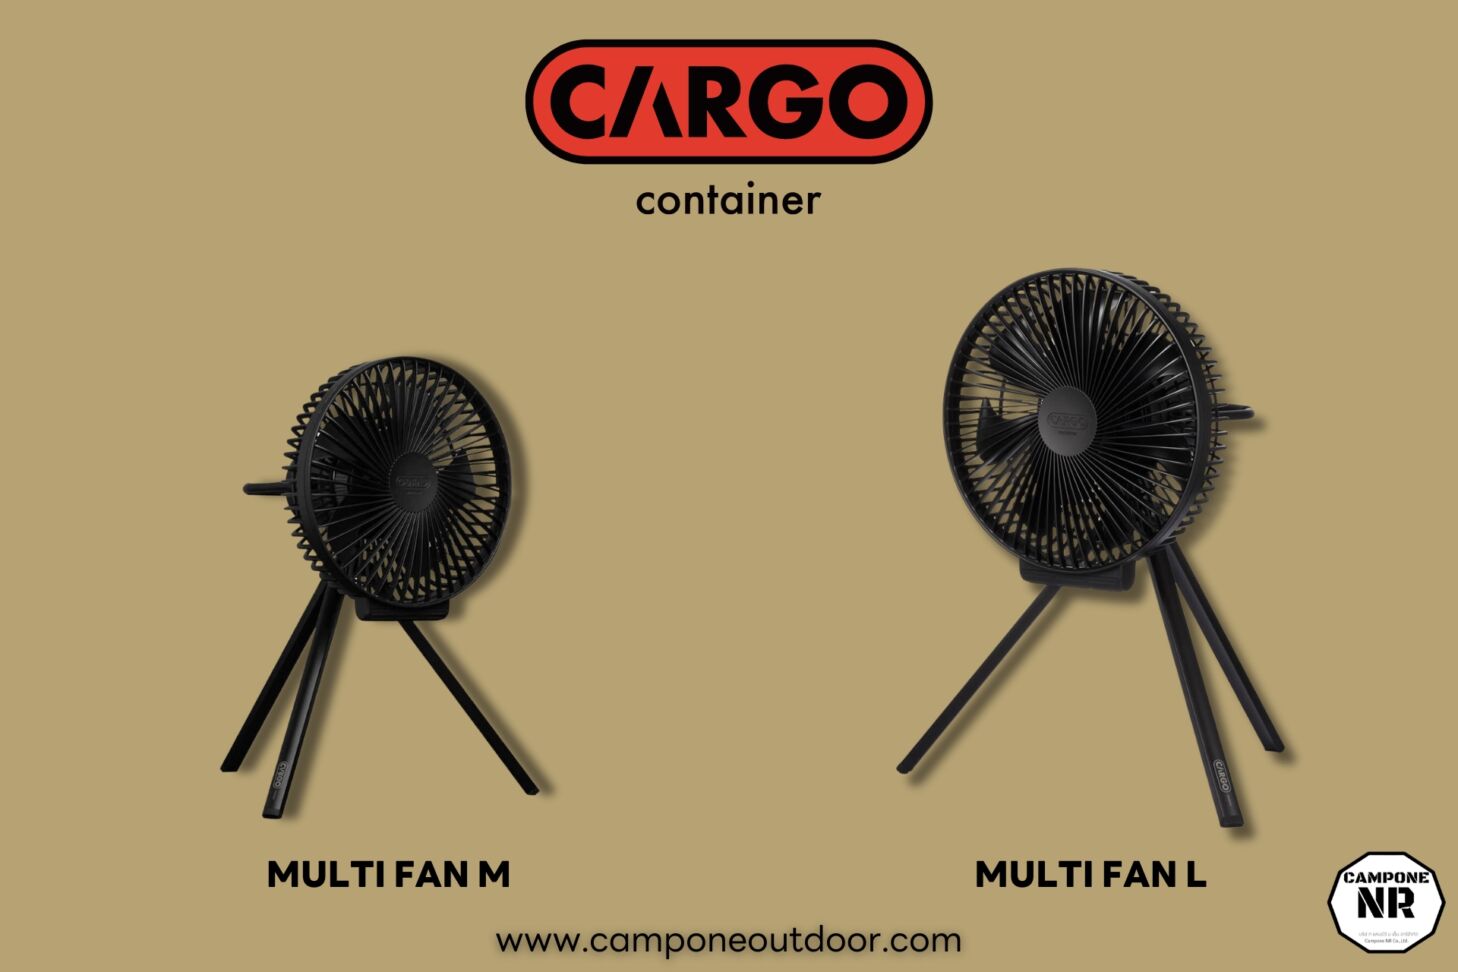 ความแตกต่างระหว่าง Multi Fan L และ Multi Fan M จาก Cargo container